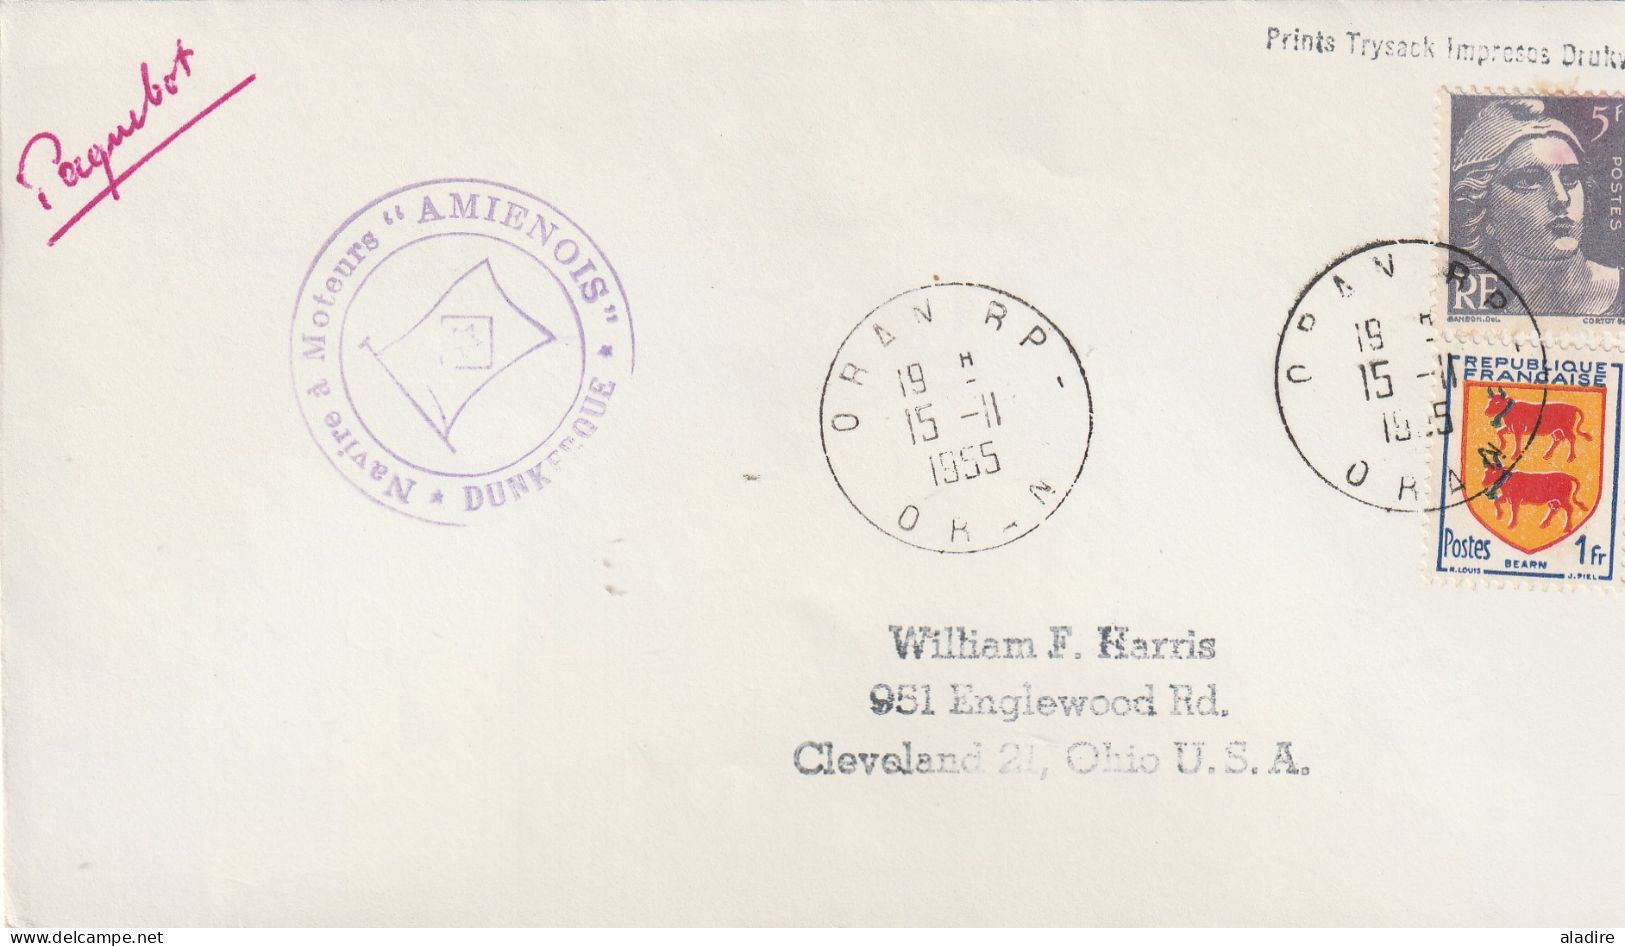 1952 /1965 - collection de 22 enveloppes PAQUEBOT - France diverses destinations